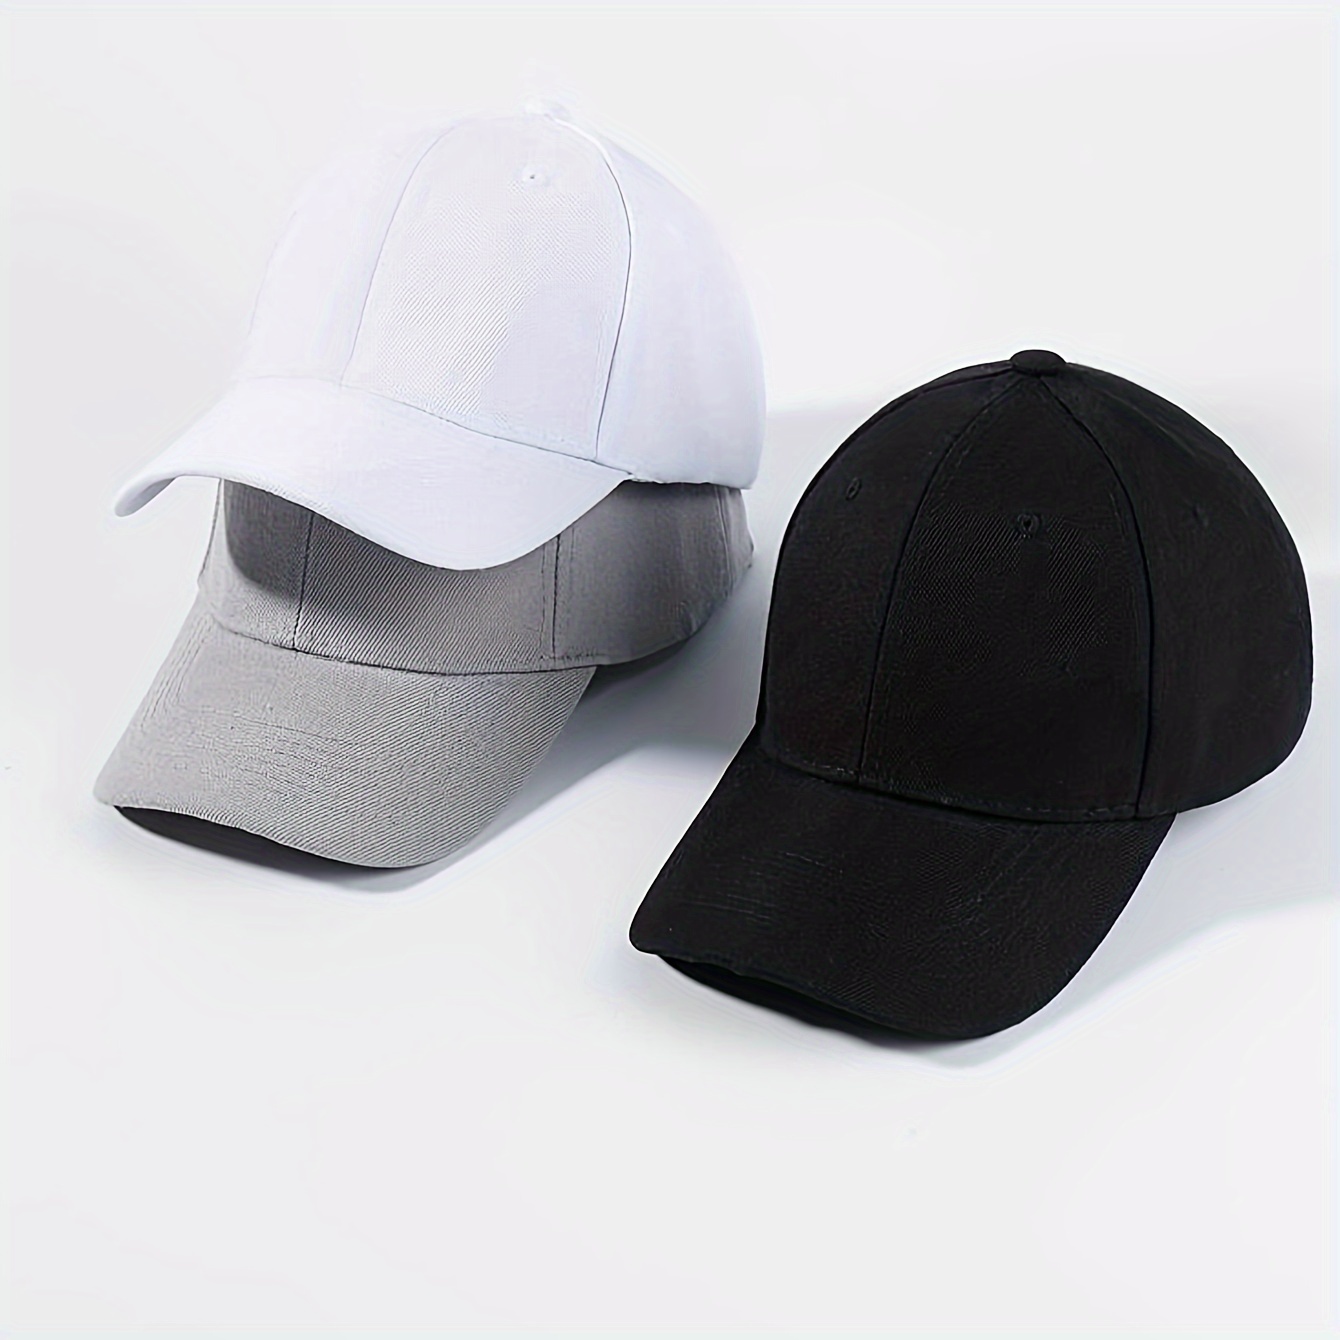 Cotton foldable baseball cap